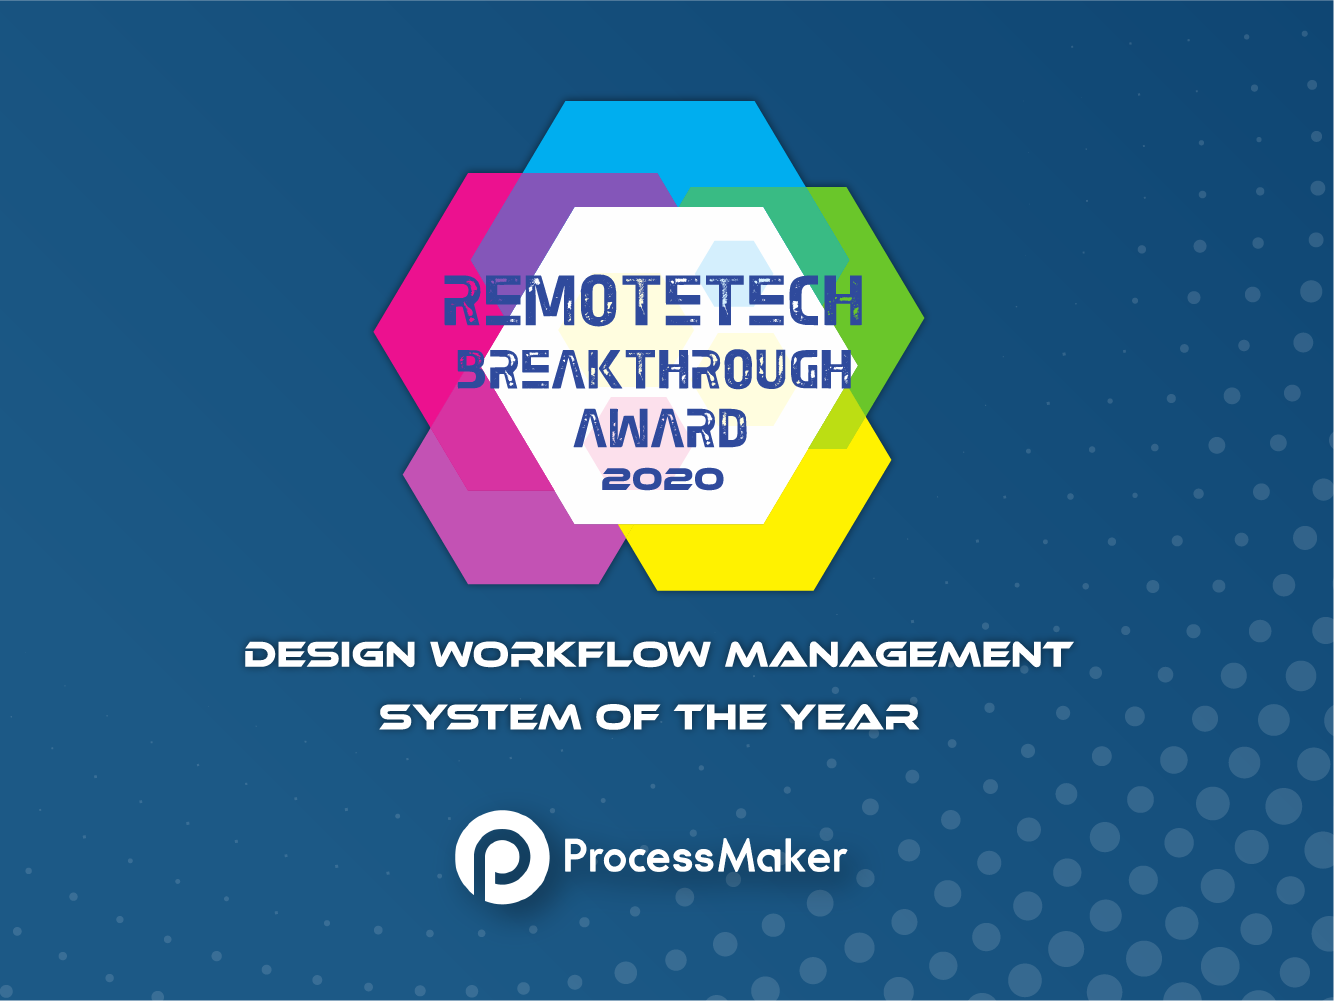 ProcessMaker récompensé comme "Système de gestion du flux de travail de conception de l'année" dans le cadre du programme "RemoteTech Breakthrough Awards